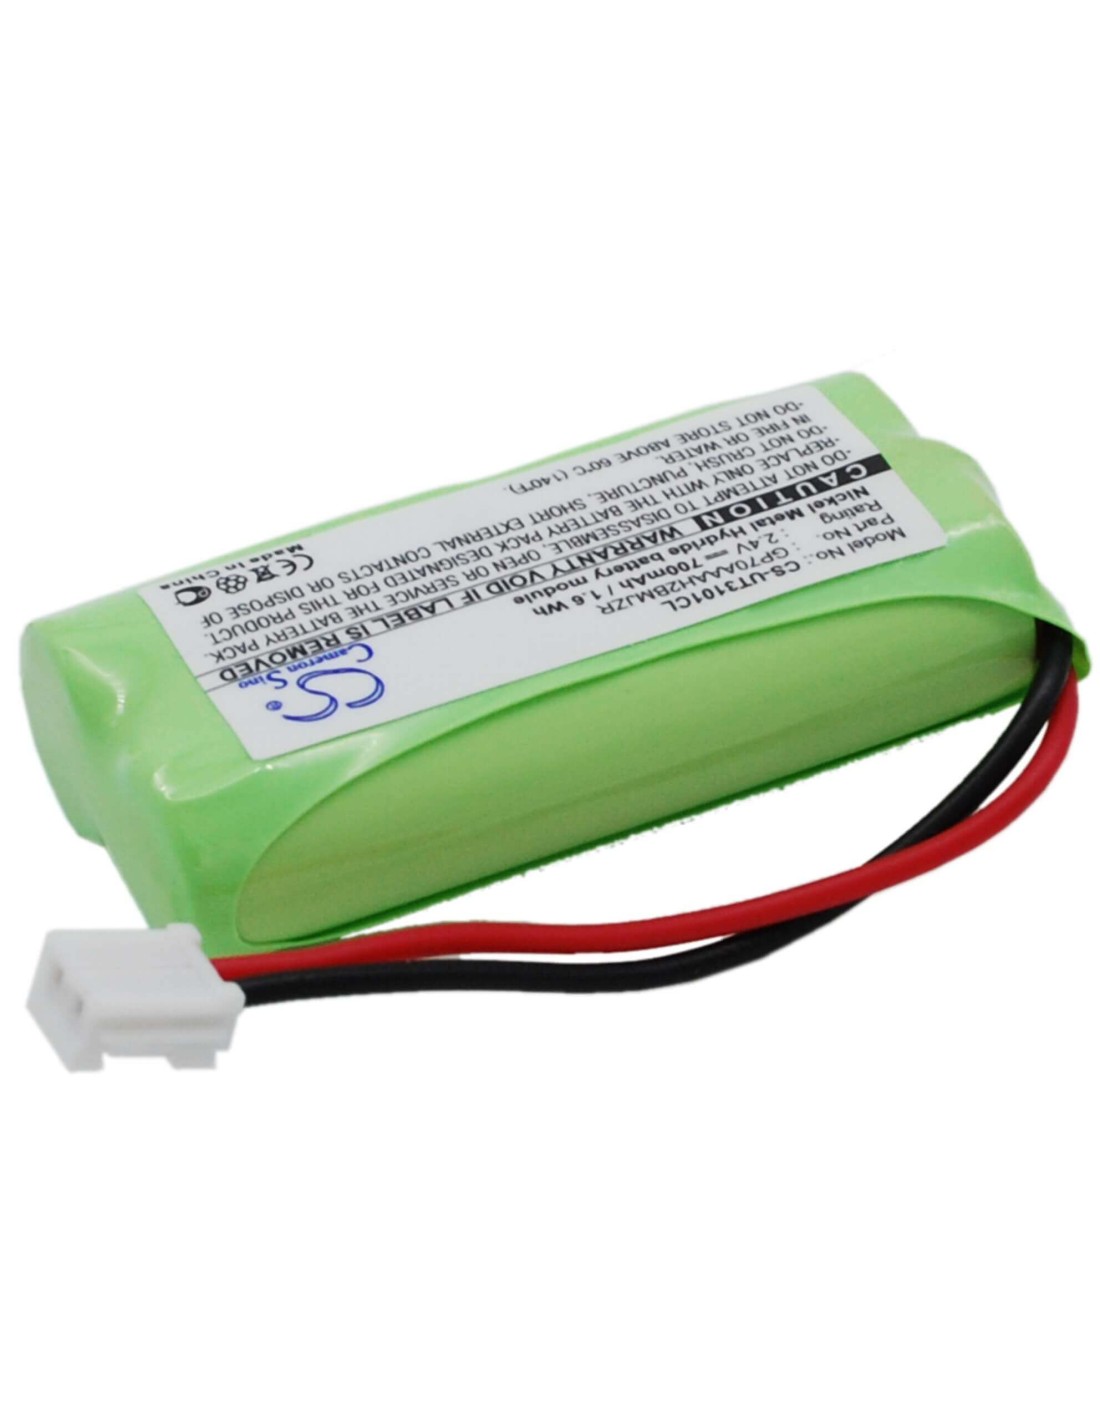 Battery for Tesco, Arc210, Arc211, Arc212, Arc410, 2.4V, 700mAh - 1.68Wh